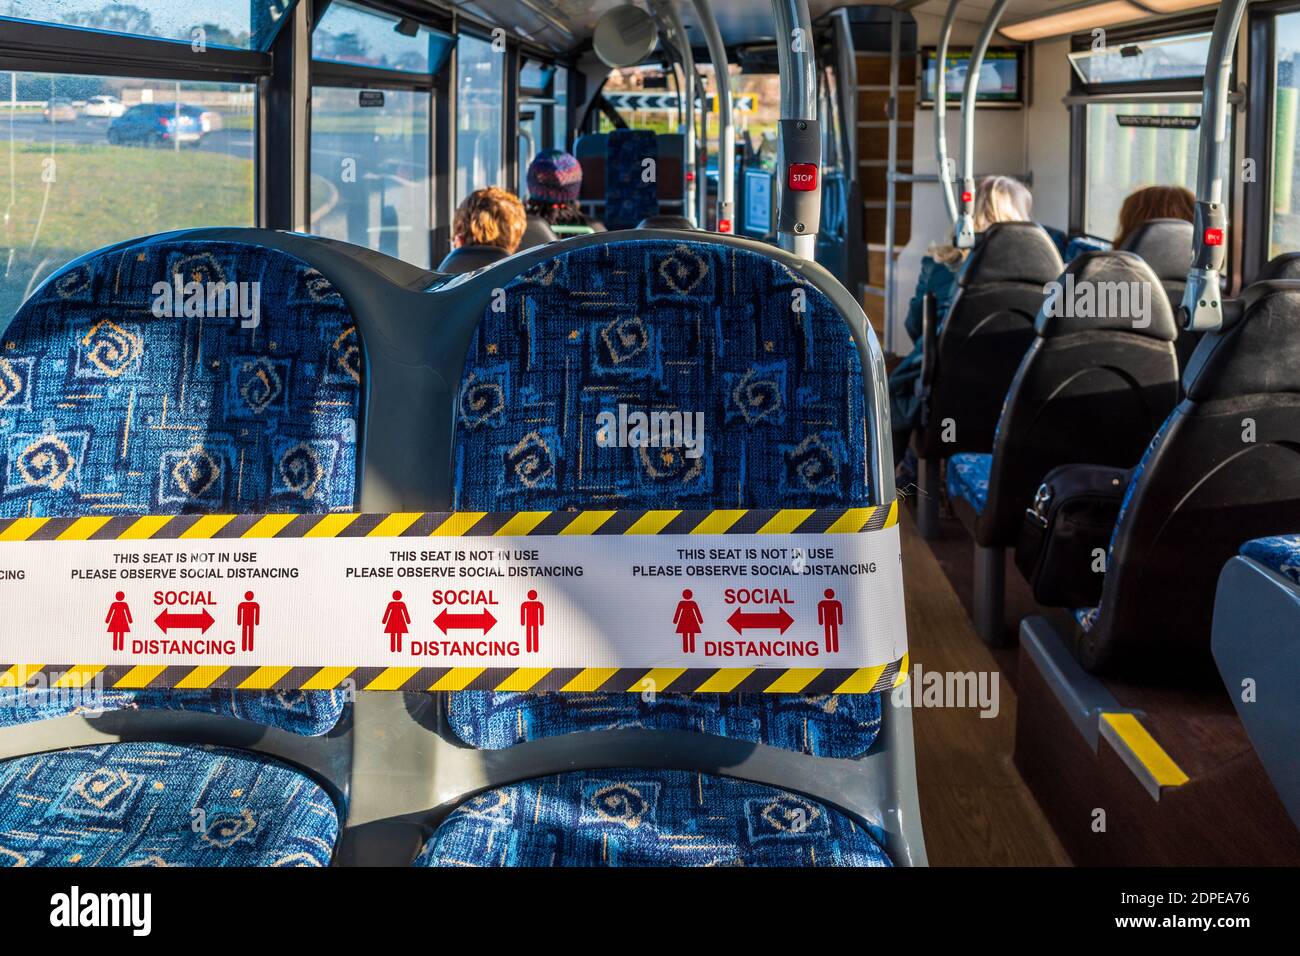 Aplicación de la ley de distanciamiento social en los autobuses. Restricciones de uso de asientos de autobús en vigor durante la pandemia de Covid-19. Foto de stock